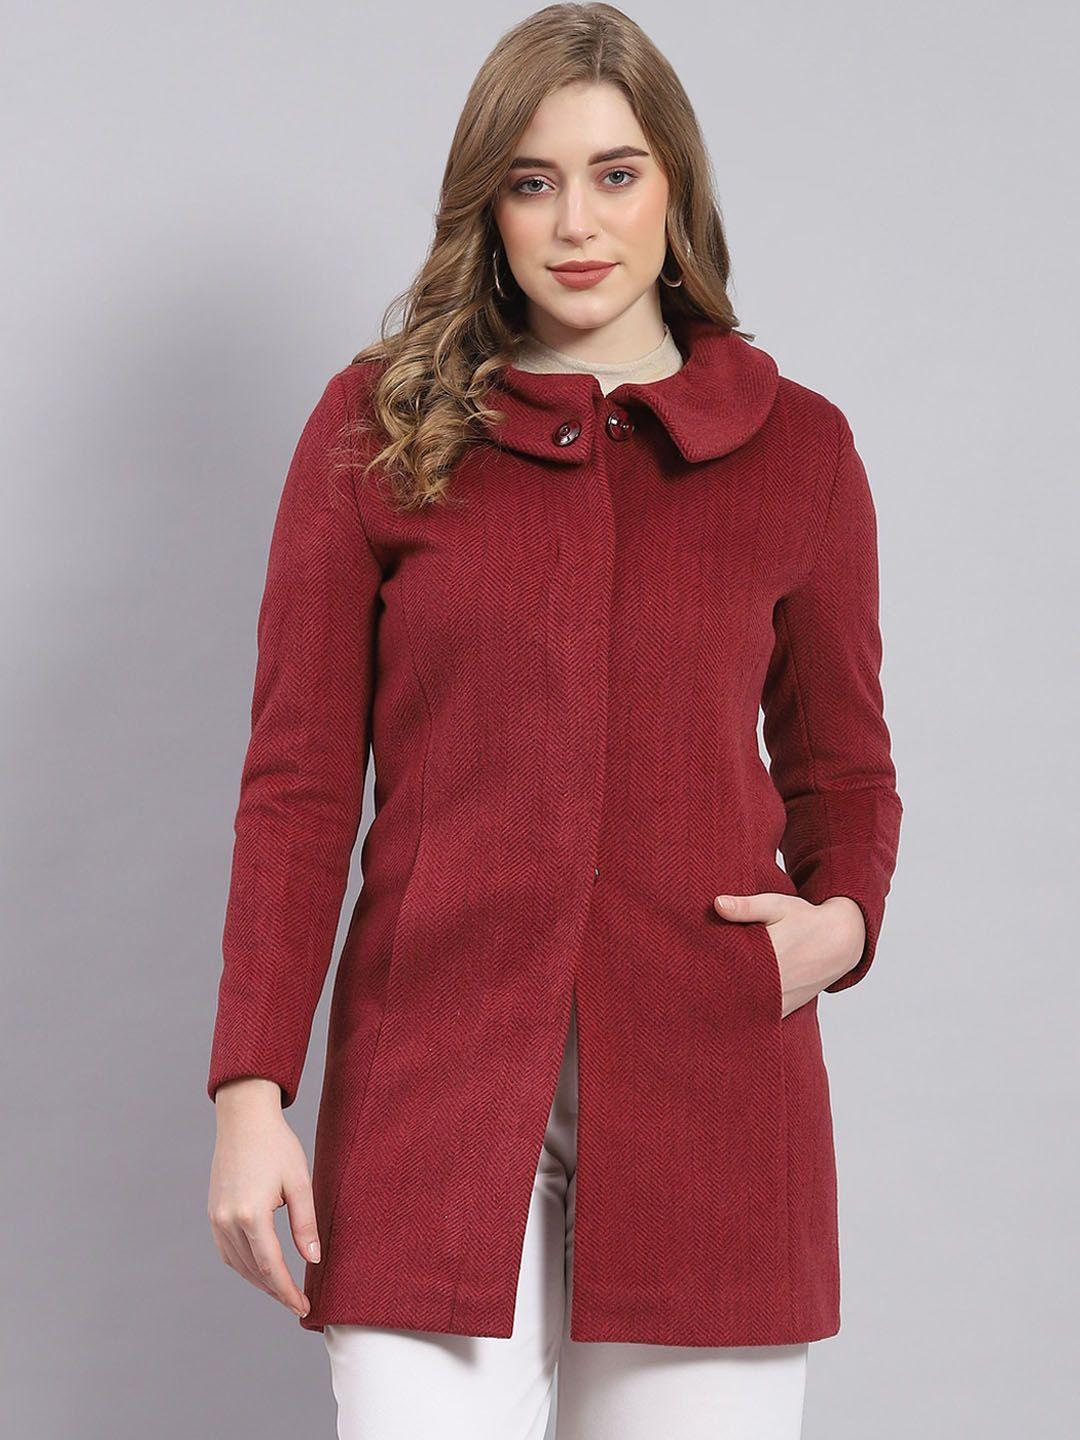 monte carlo self-designed spread collar woollen overcoat